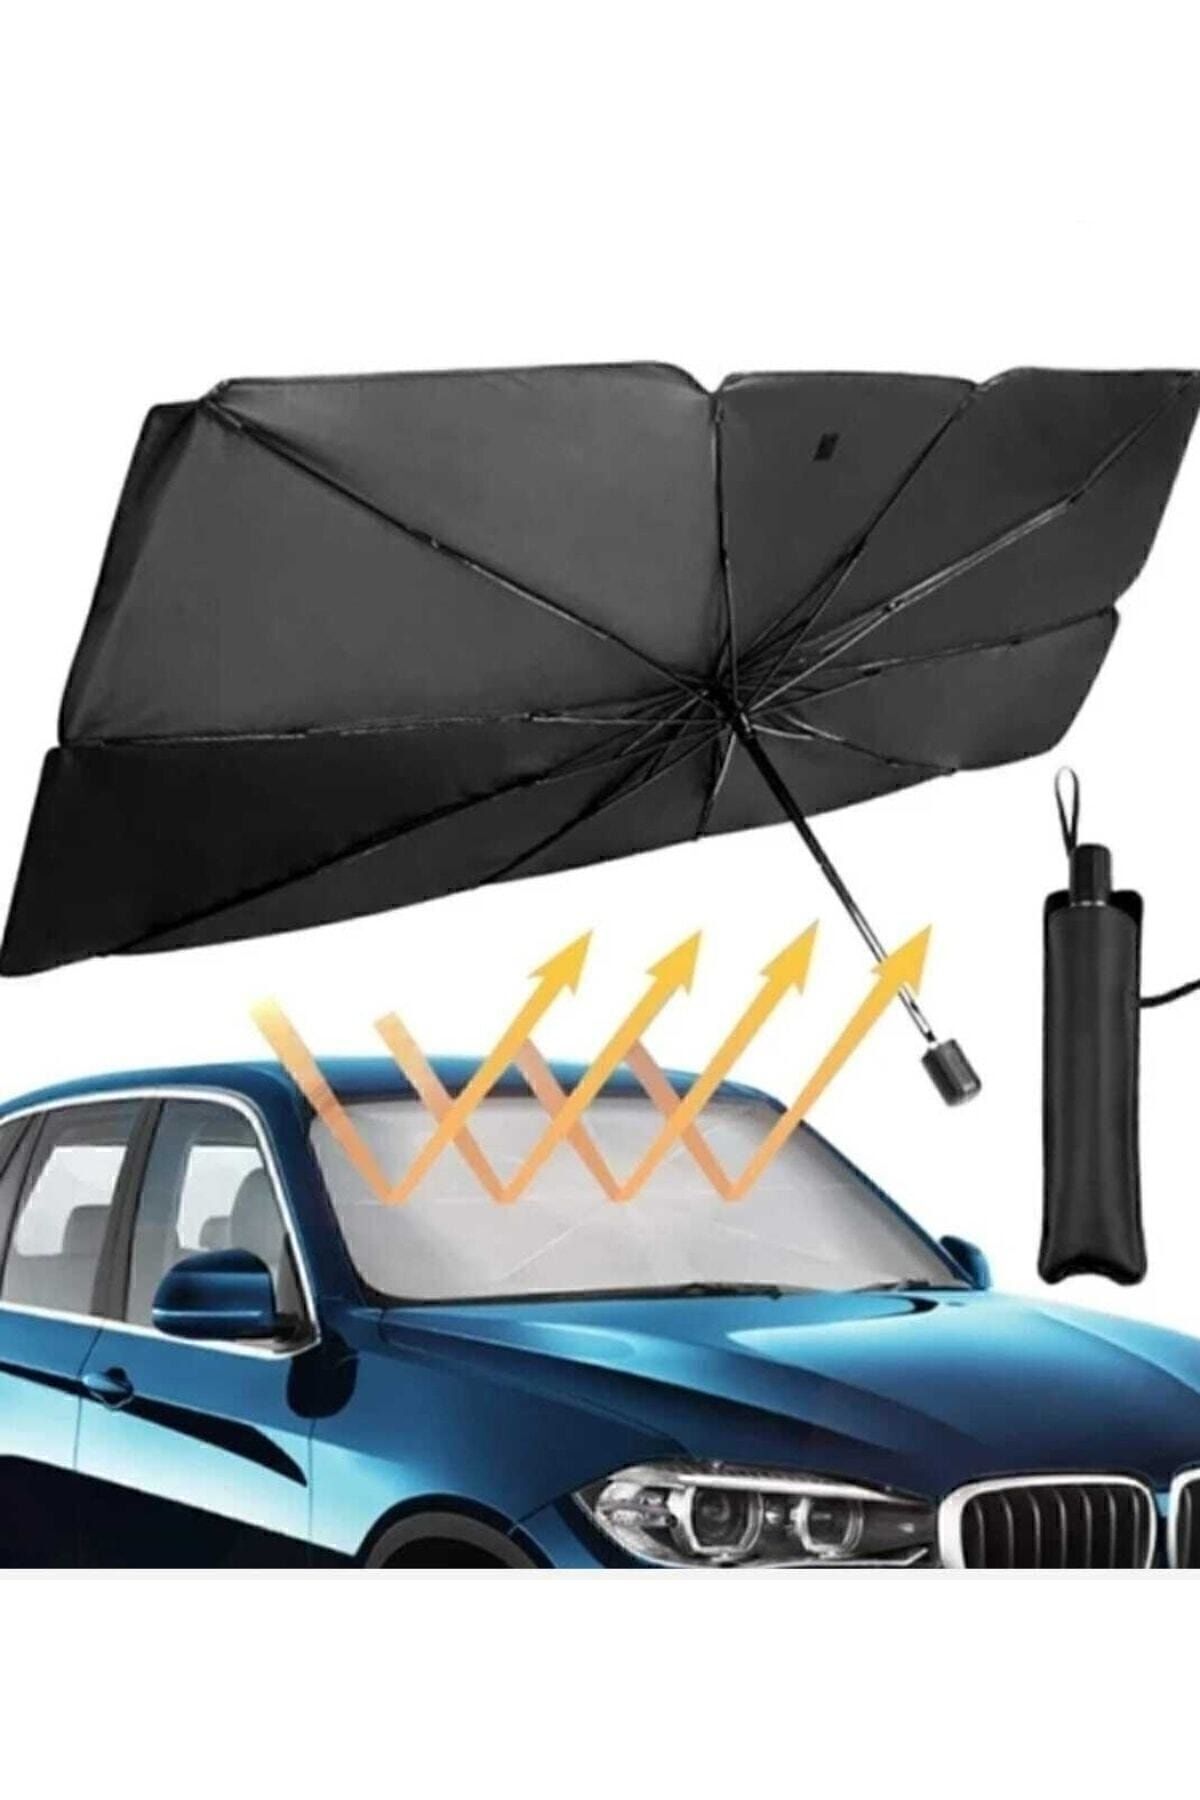 Genel Markalar Tüm Araçlar İçin Araba Ön Cam Güneşlik Katlanabilir Güneşlik Şemsiye Ön Cam Gölgelik ESNEK